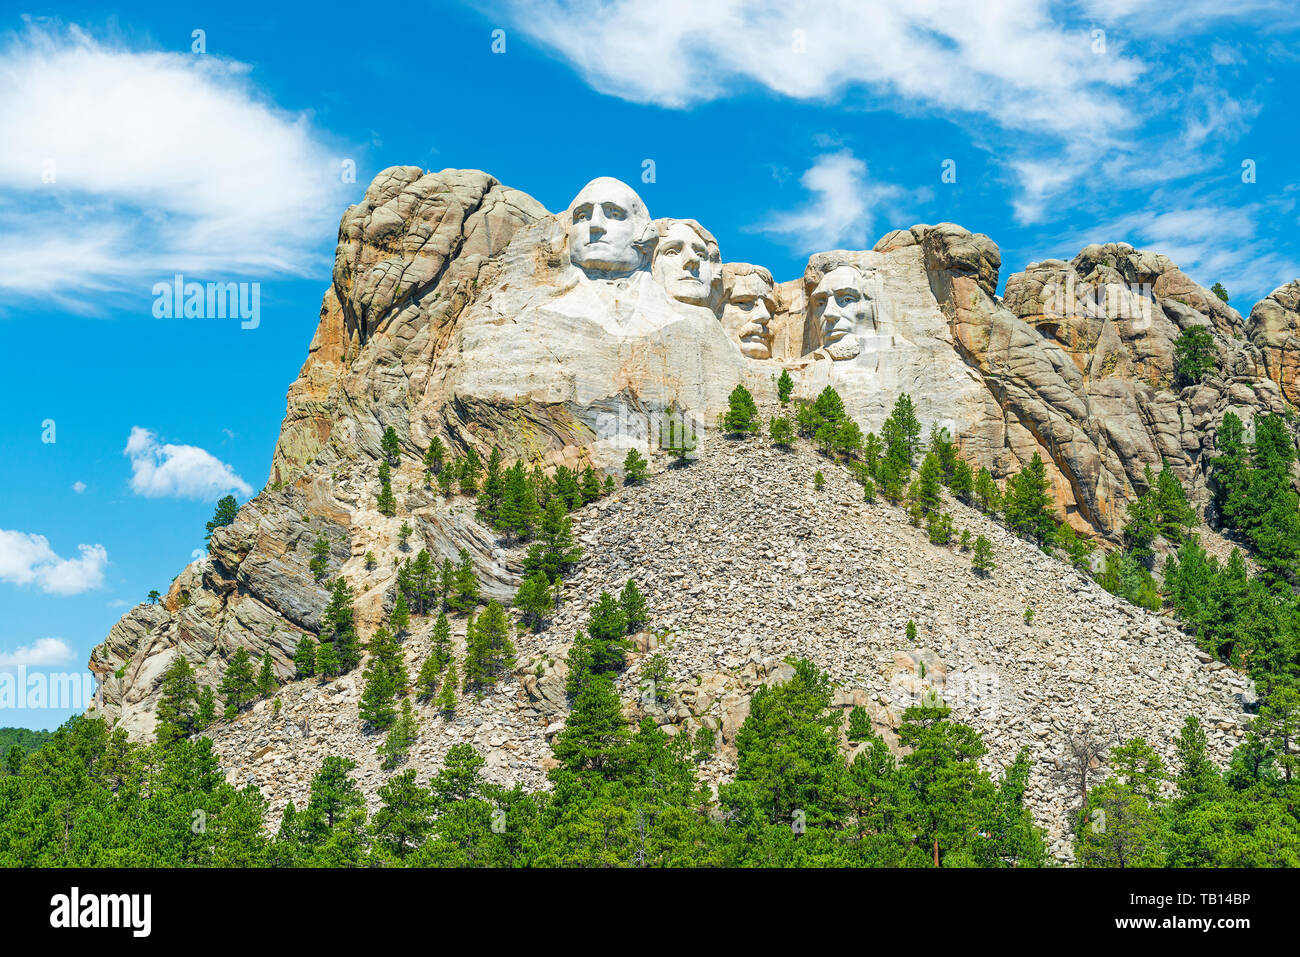 Mount Rushmore national monument avec une pinède dans les Black Hills à proximité de Rapid City dans le Dakota du Sud, États-Unis d'Amérique, USA. Banque D'Images